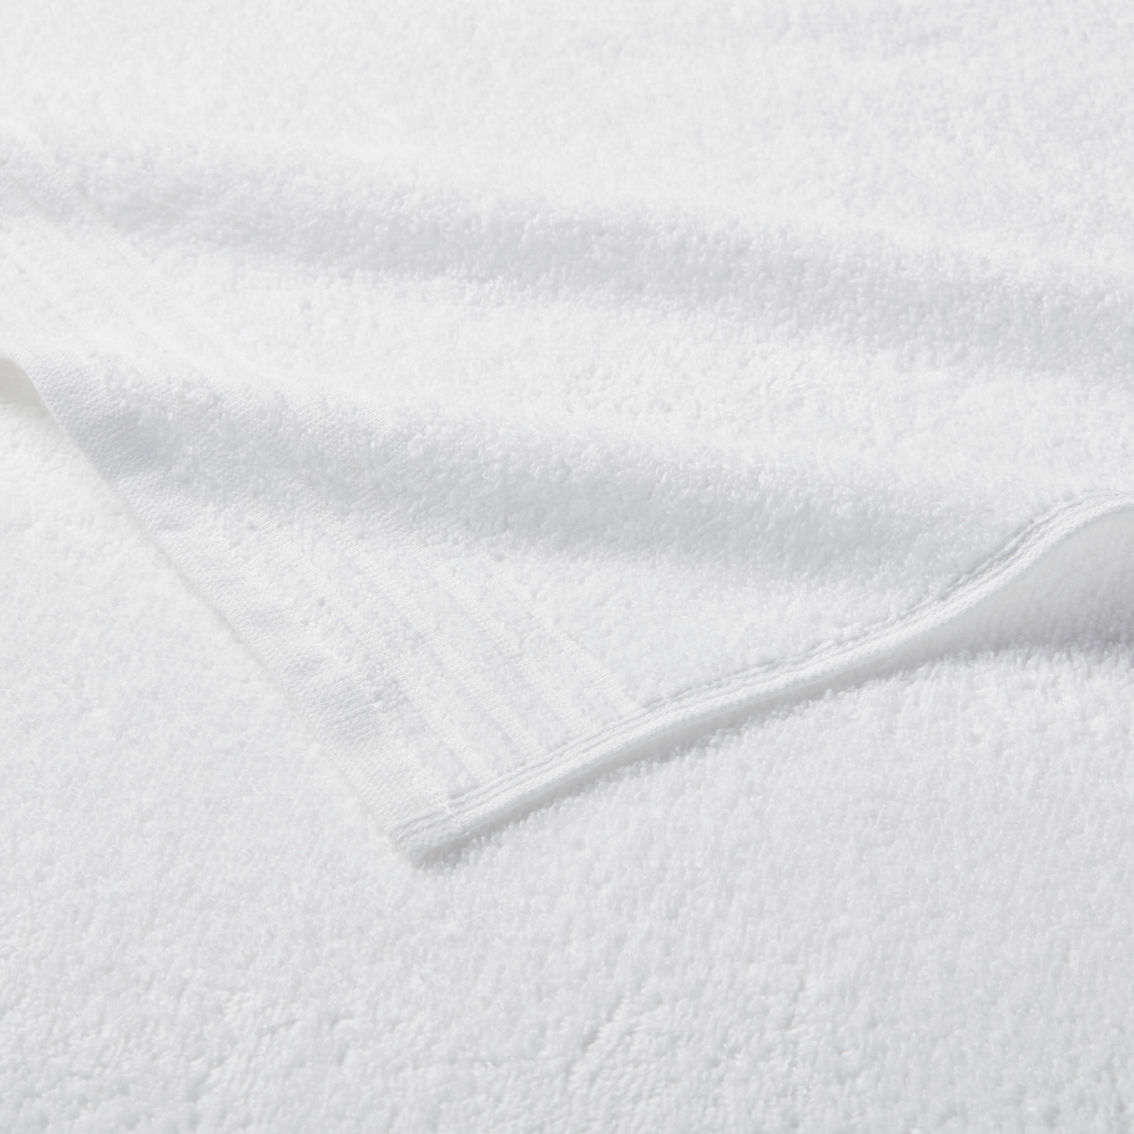 510 Design Big Bundle 100% Cotton Quick Dry 12 Piece Bath Towel Set - Image 4 of 5